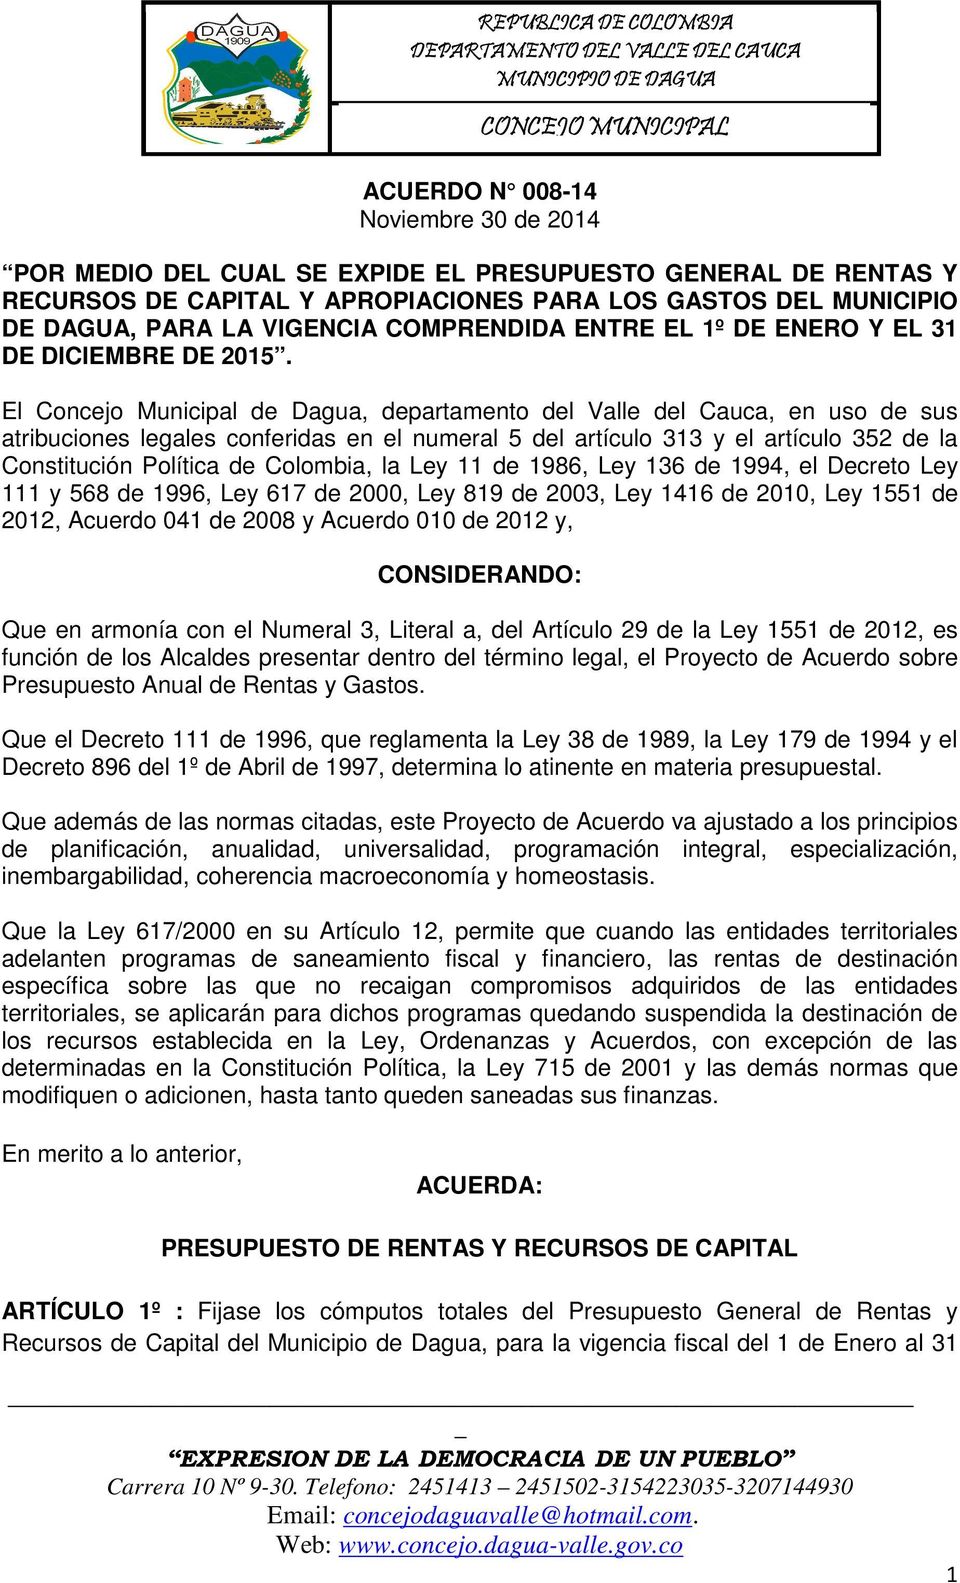 El Concejo Municipal de Dagua, departamento del Valle del Cauca, en uso de sus atribuciones legales conferidas en el numeral 5 del artículo 313 y el artículo 352 de la Constitución Política de